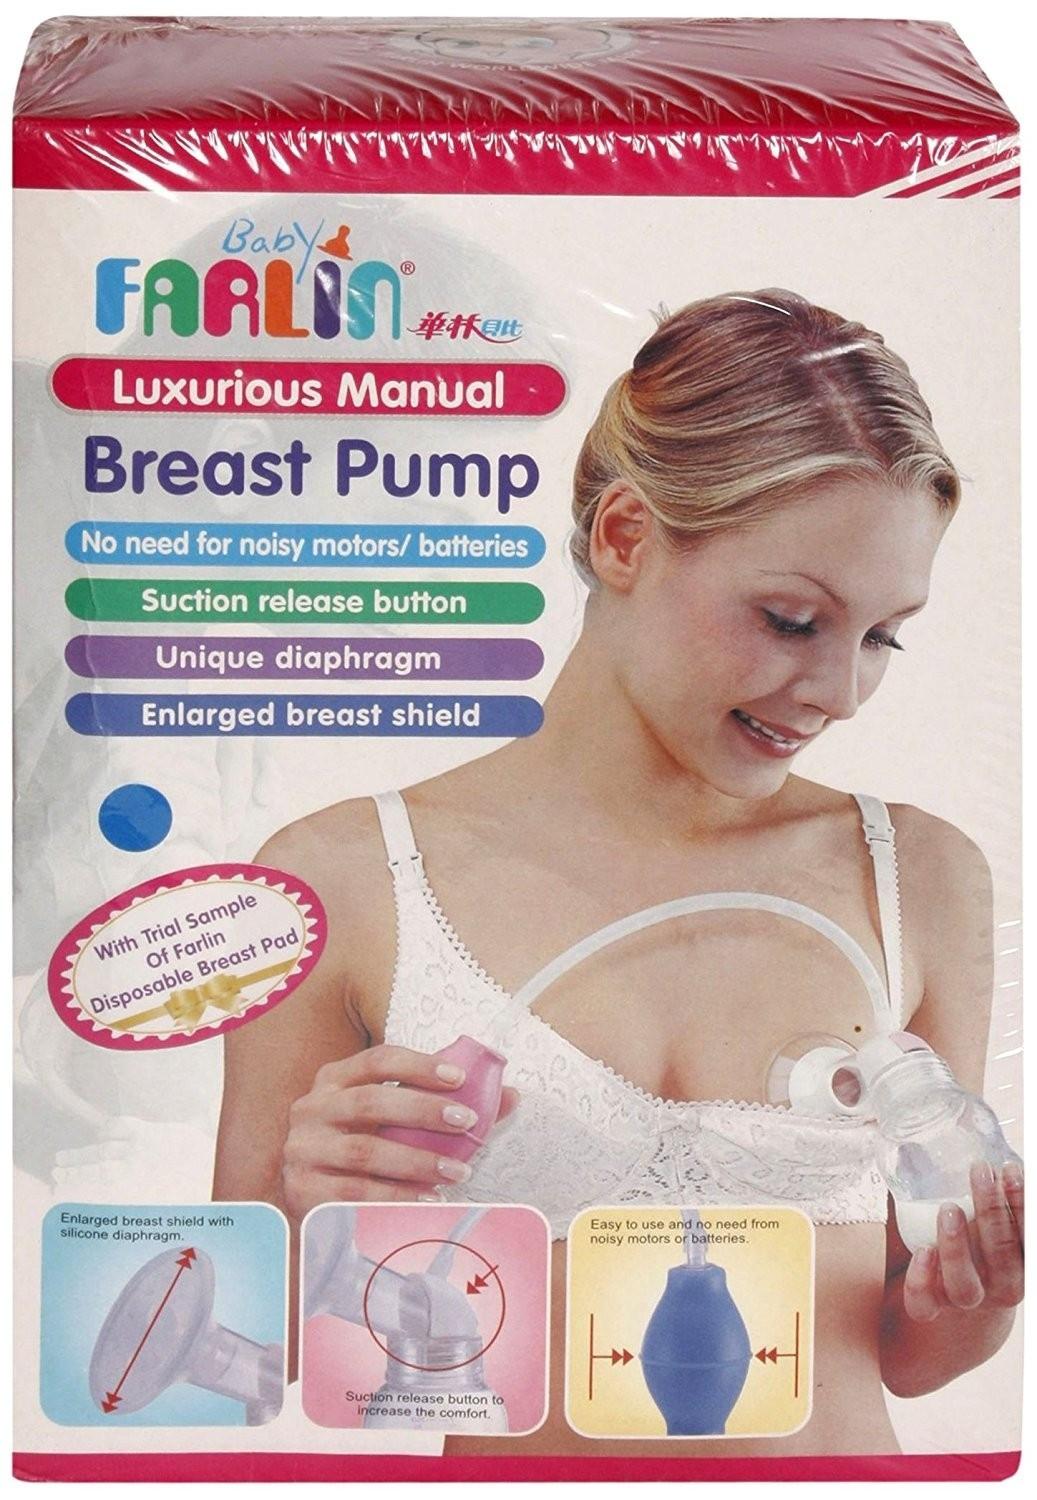 Manual Breast Pump – Farlin